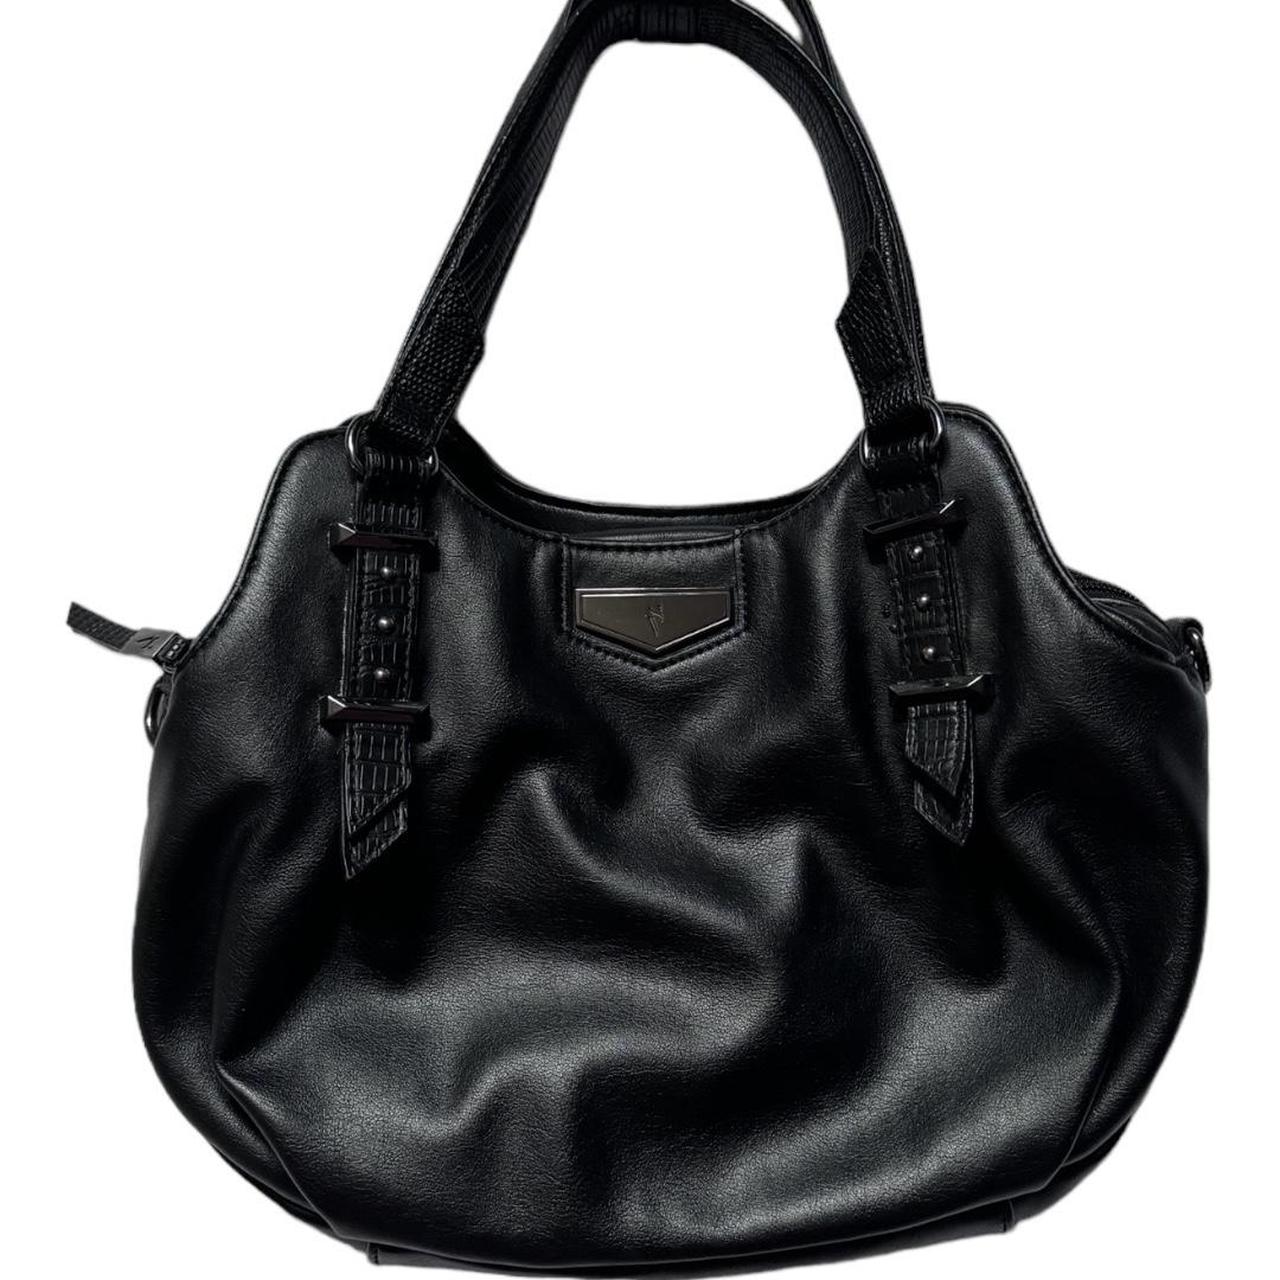 Simply Vera Vera Wang | Bags | Simply Vera Wang Purse Handbag Blue |  Poshmark